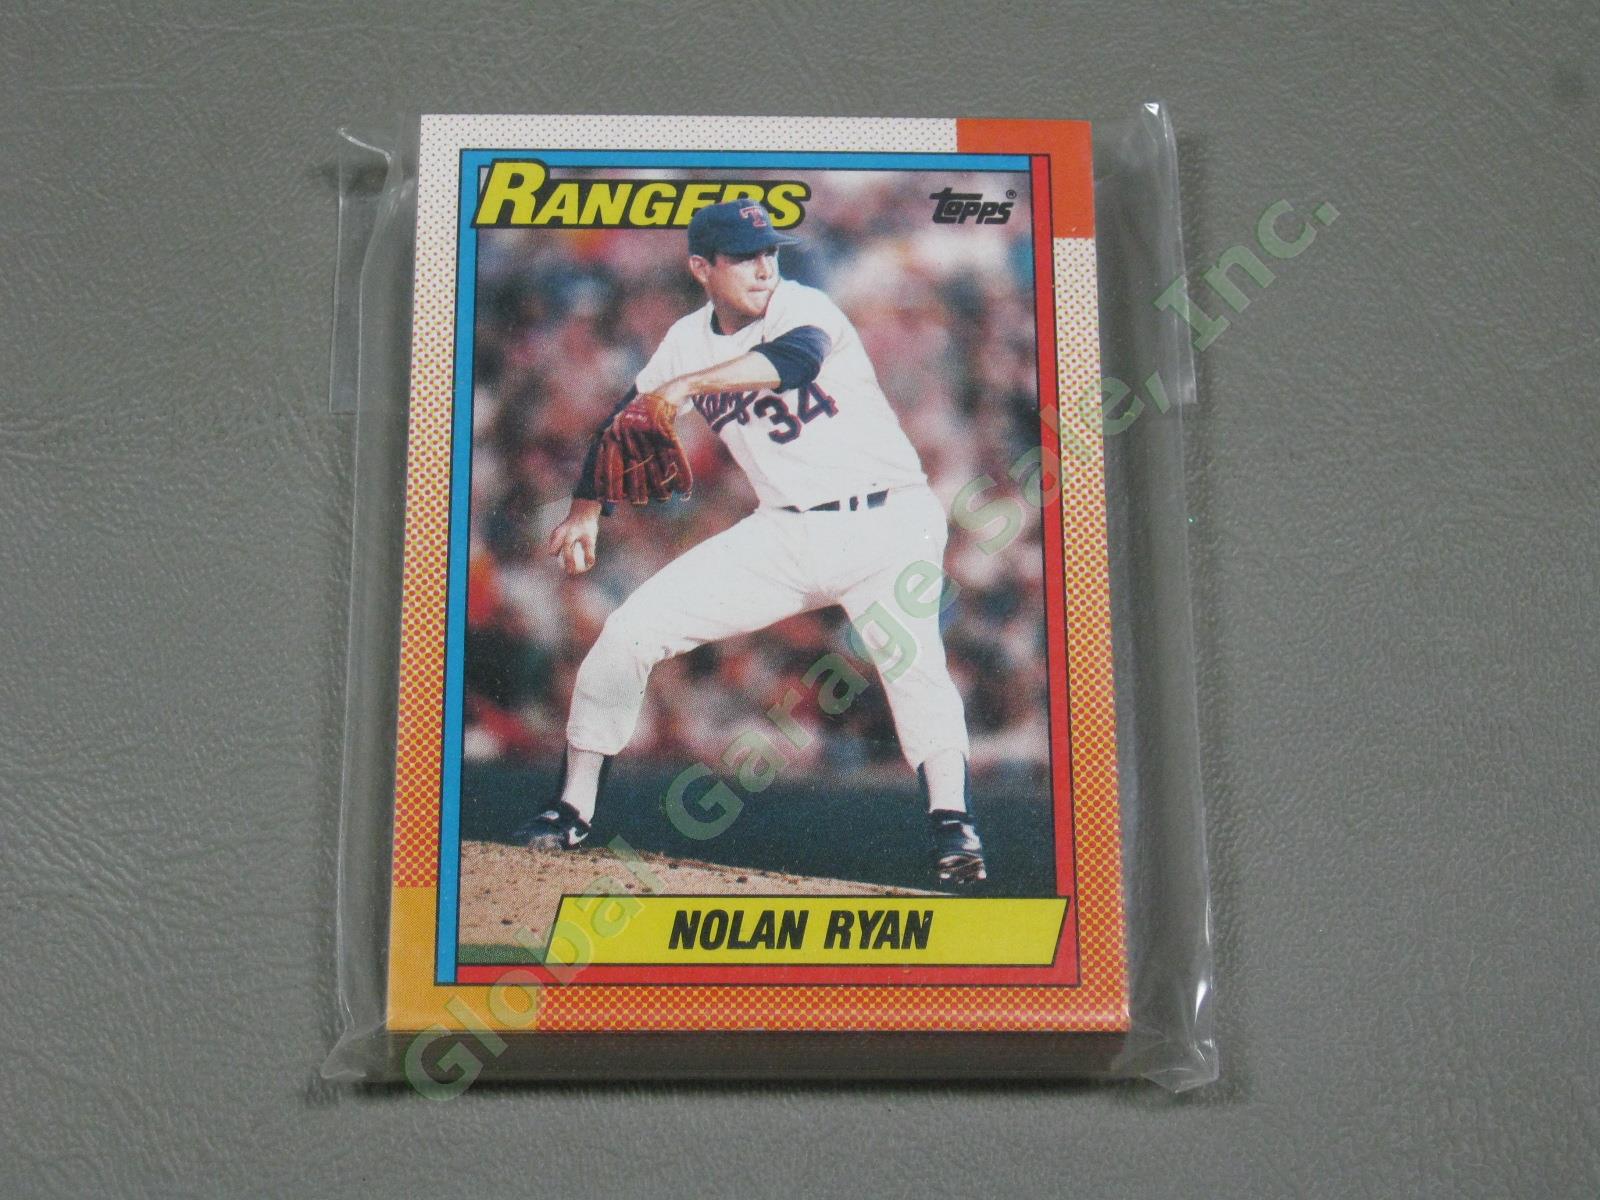 HUGE 3650+/- Vtg Nolan Ryan Baseball Card Lot 1984-1991 Topps Upper Deck #1 ++NR 4